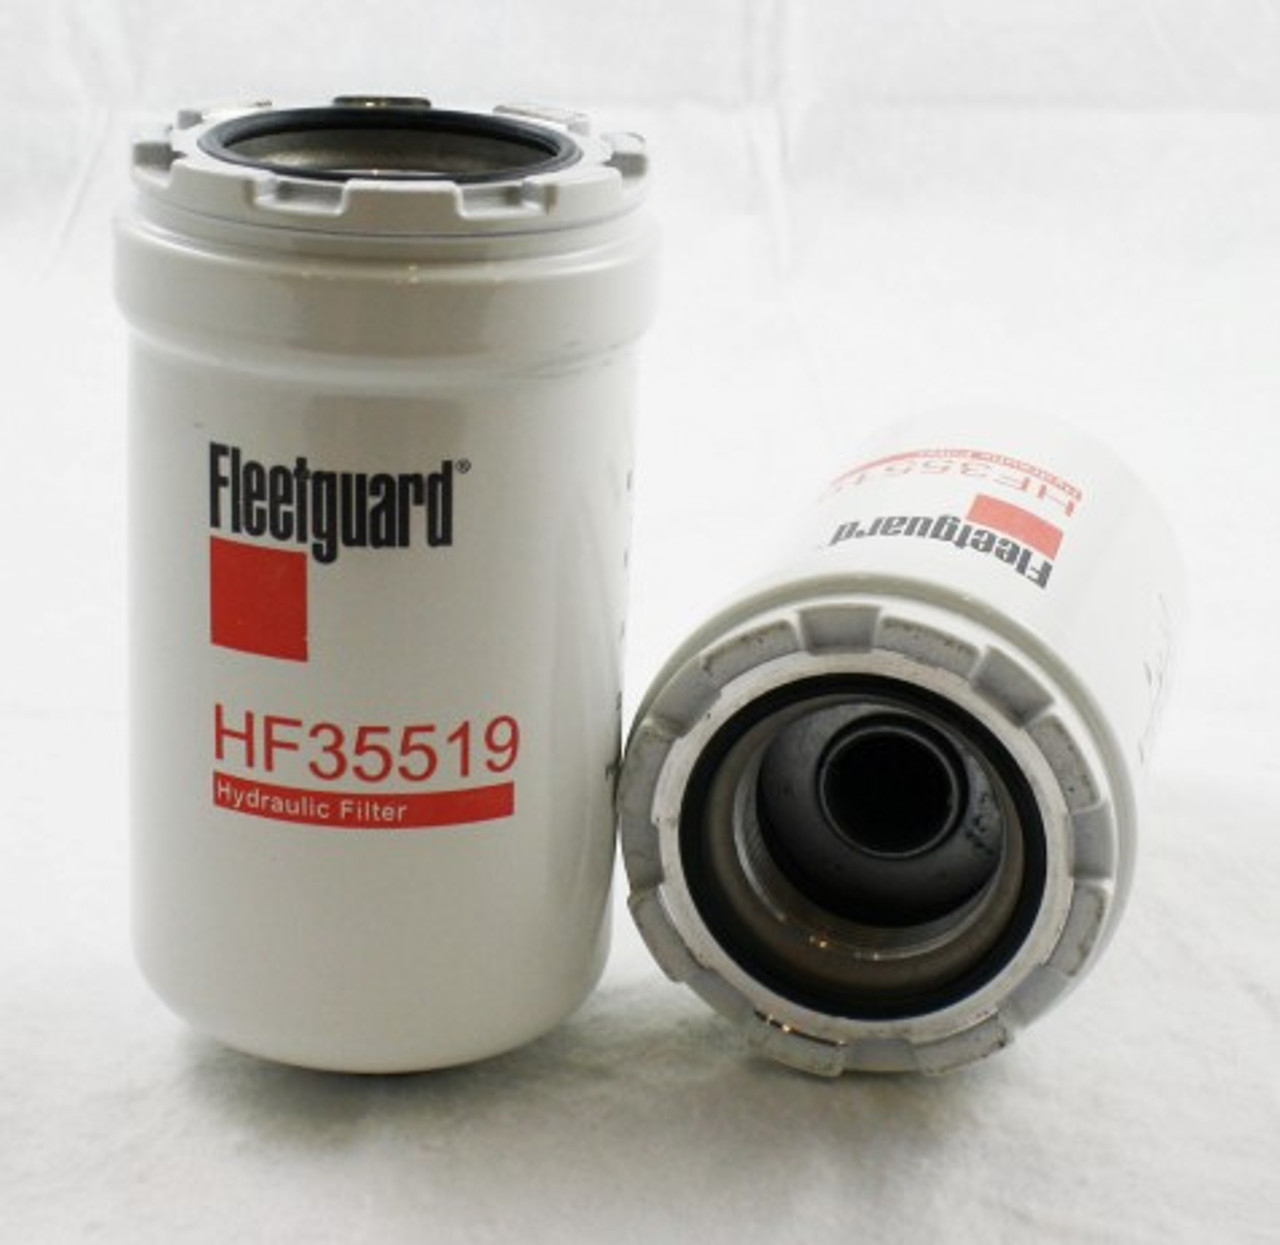 HF35519: Fleetguard Hydraulic Filter